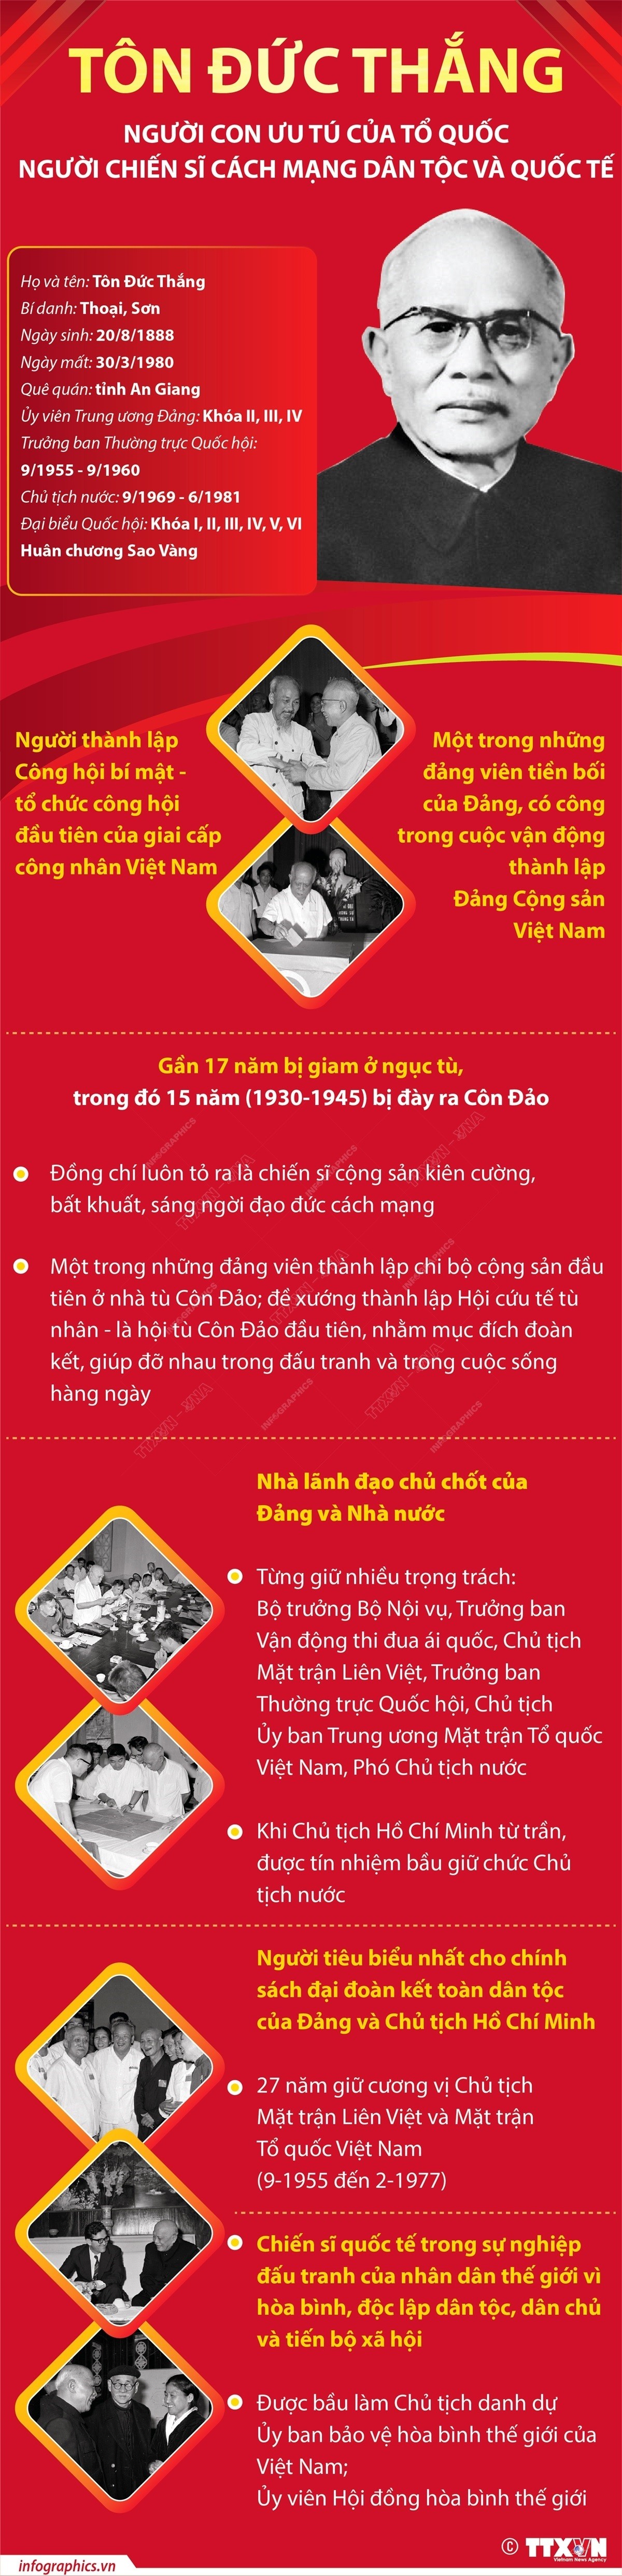 infographics-chu-tich-ton-duc-thang-1-1692493465.jpg